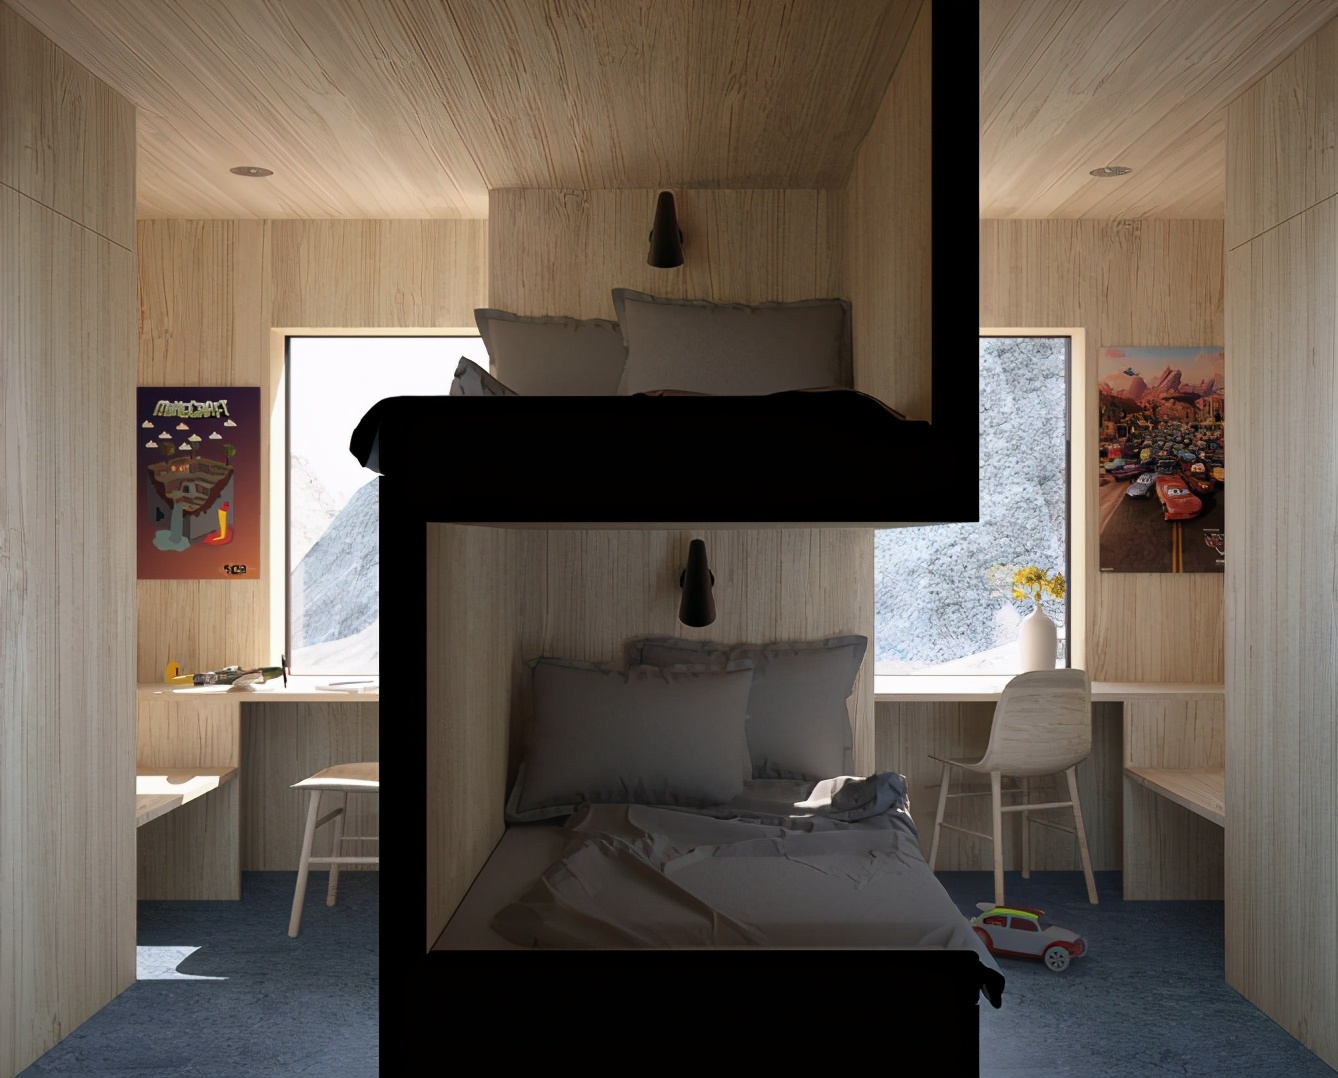 美式卧室 - 效果图交流区-建E室内设计网